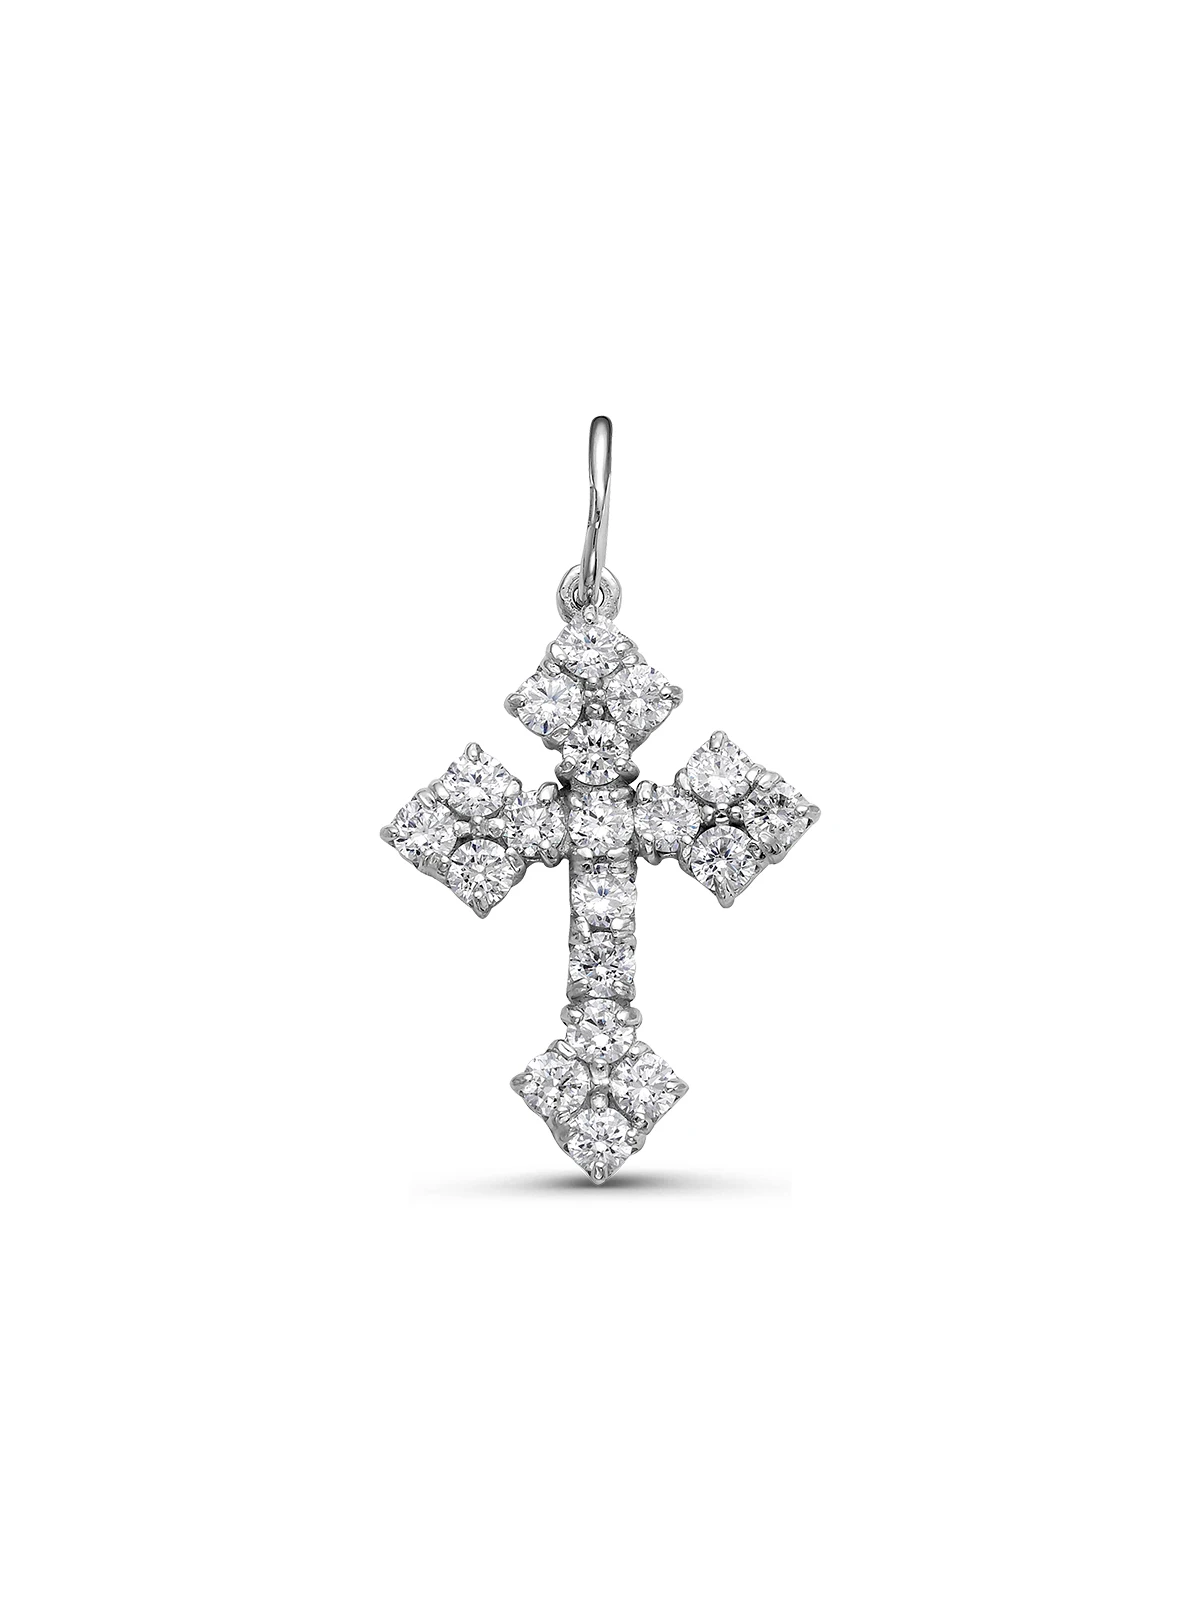 925 Sterling Silver Cross Modern Elegant Jewelry Pendant